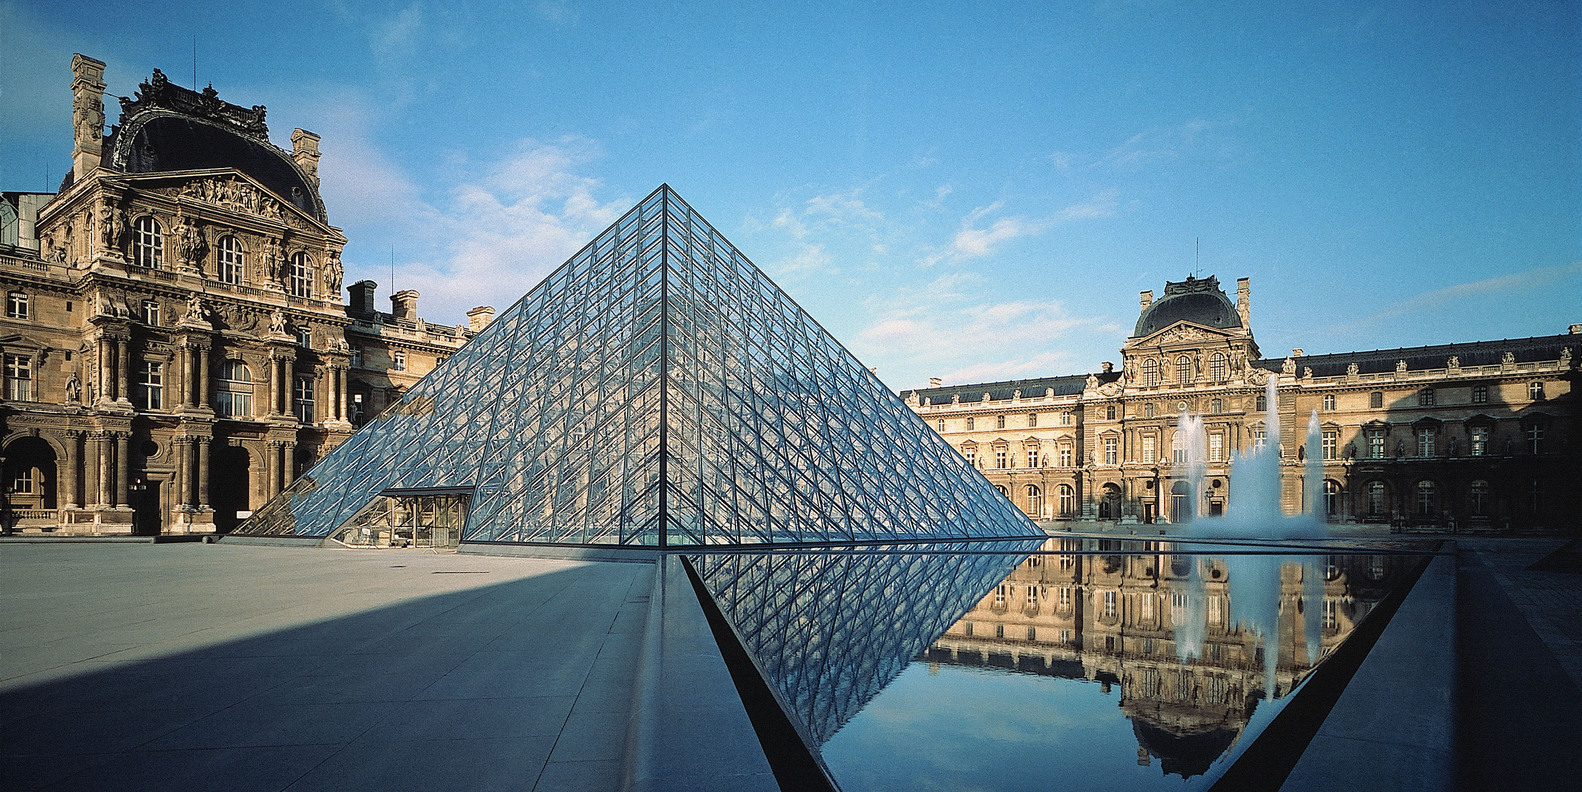 Kim tự tháp Louvre: Dấu ấn của chính trị và tình yêu